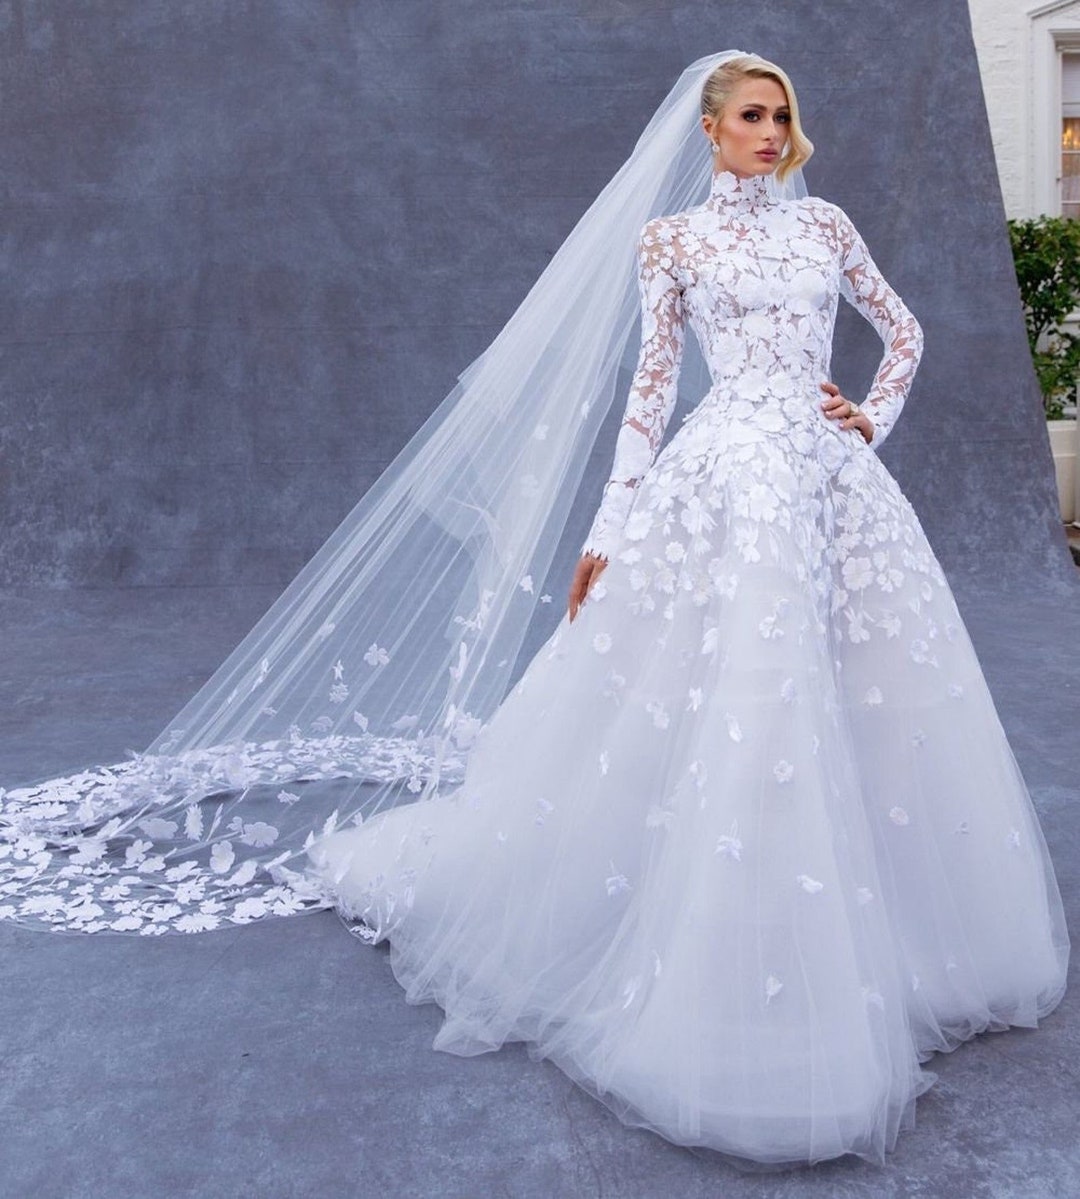 Uniquely Designed Paris Hilton Wedding Dress High Neck Lace - Etsy UK